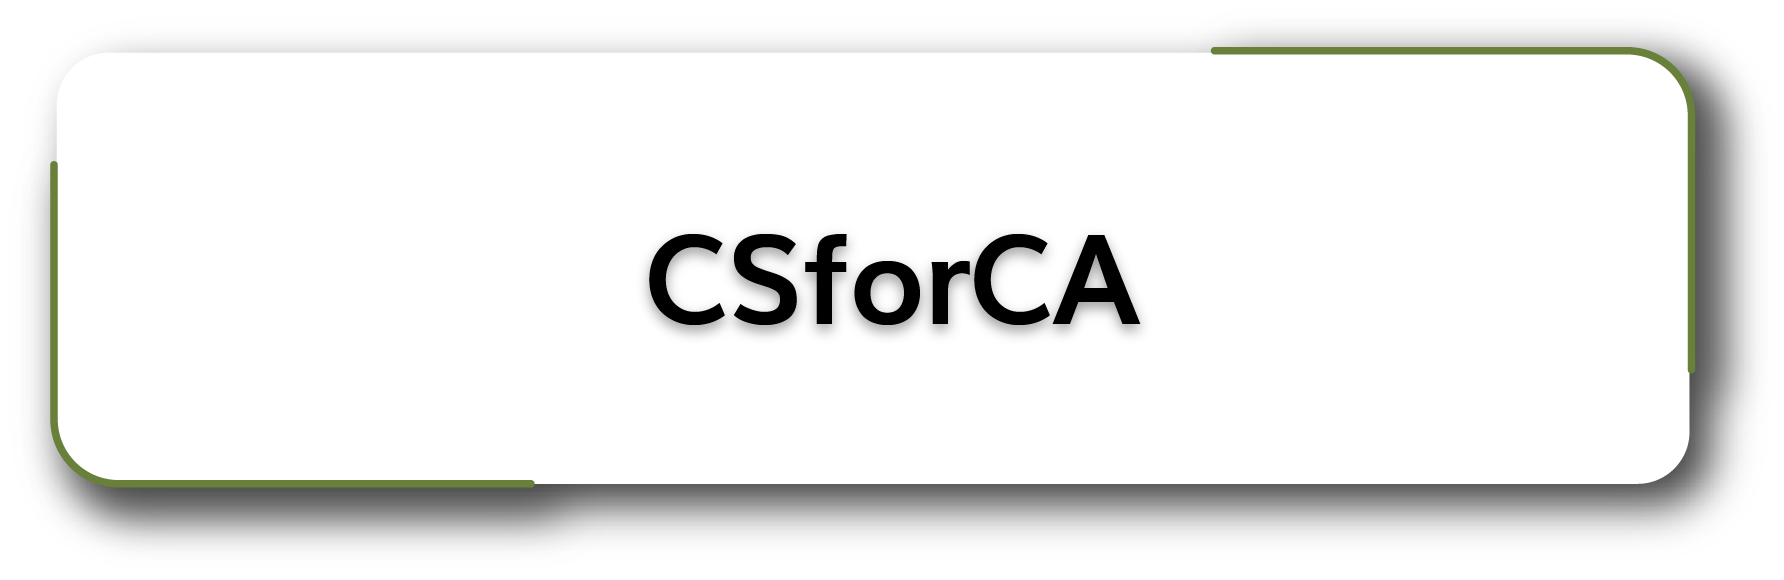 CSforCA Button